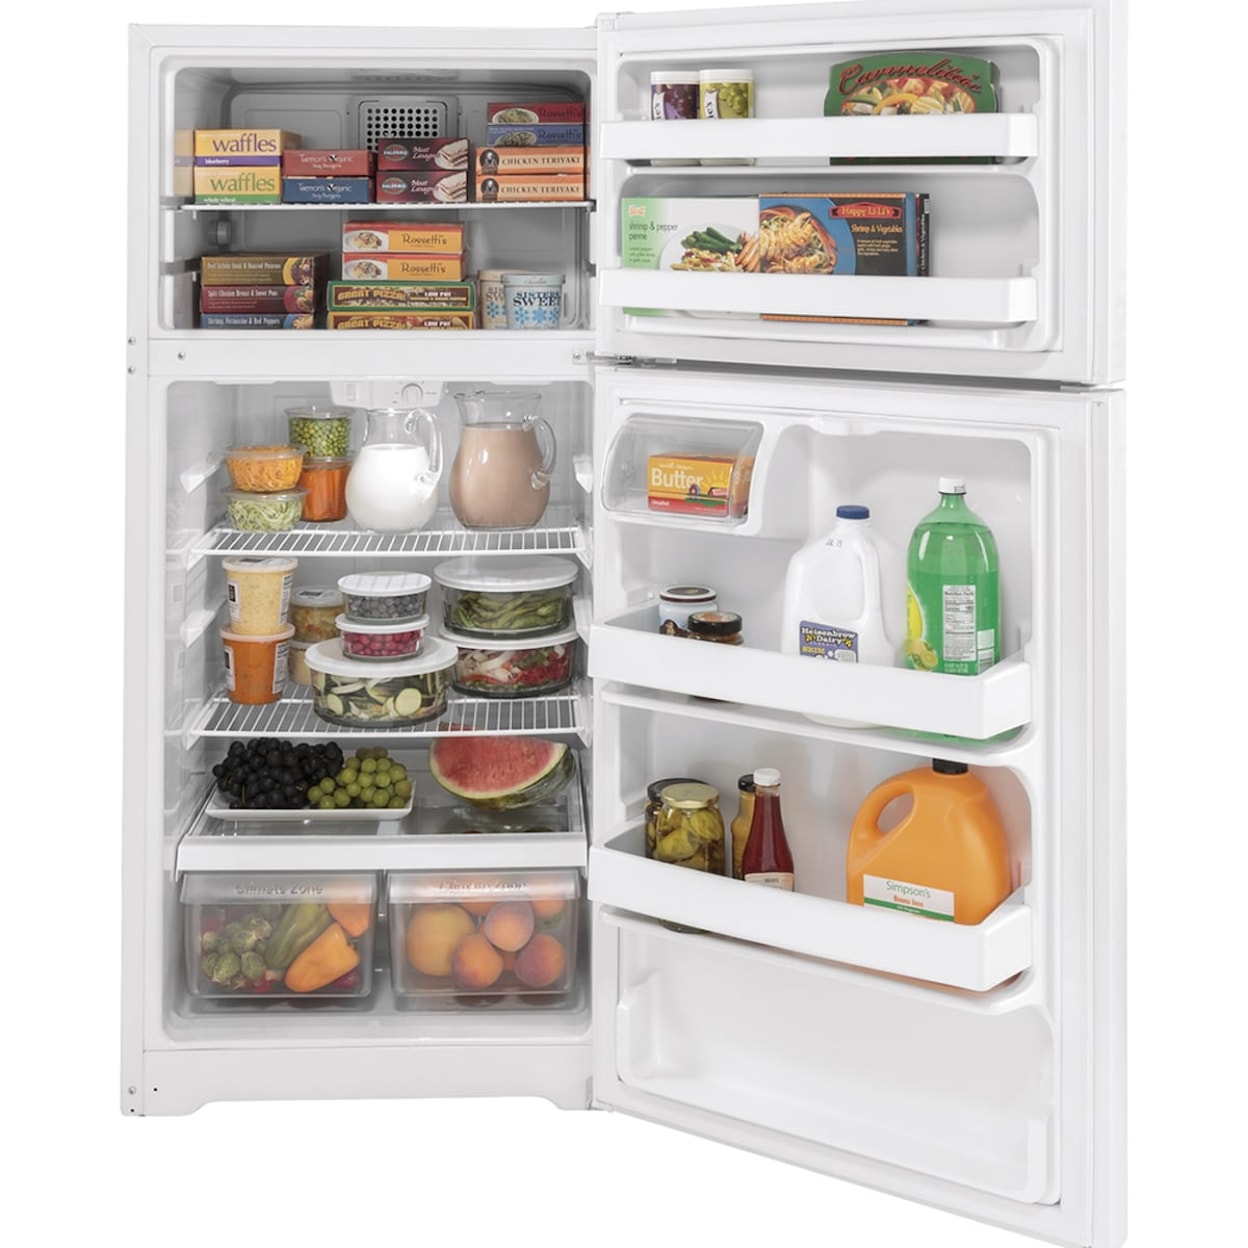 GE Appliances Refridgerators Top Freezer Freestanding Refrigerator